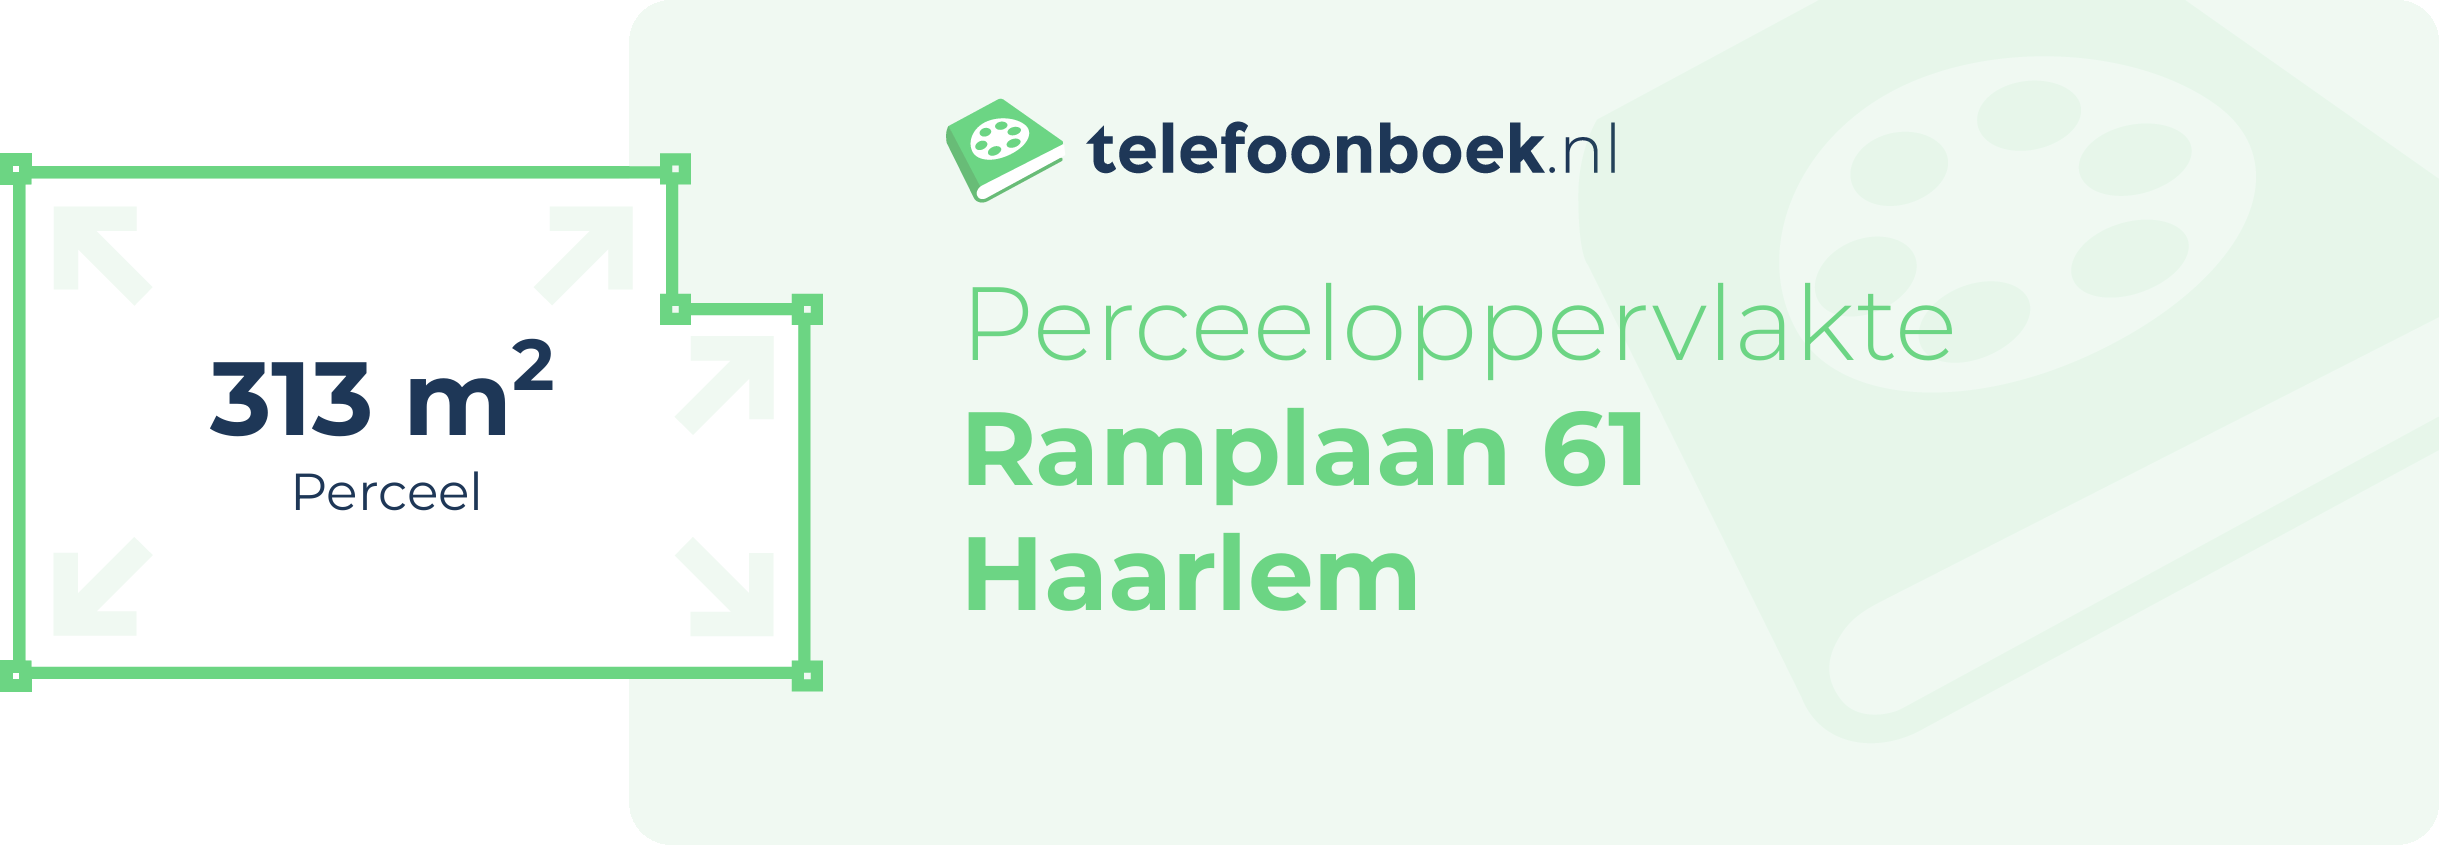 Perceeloppervlakte Ramplaan 61 Haarlem